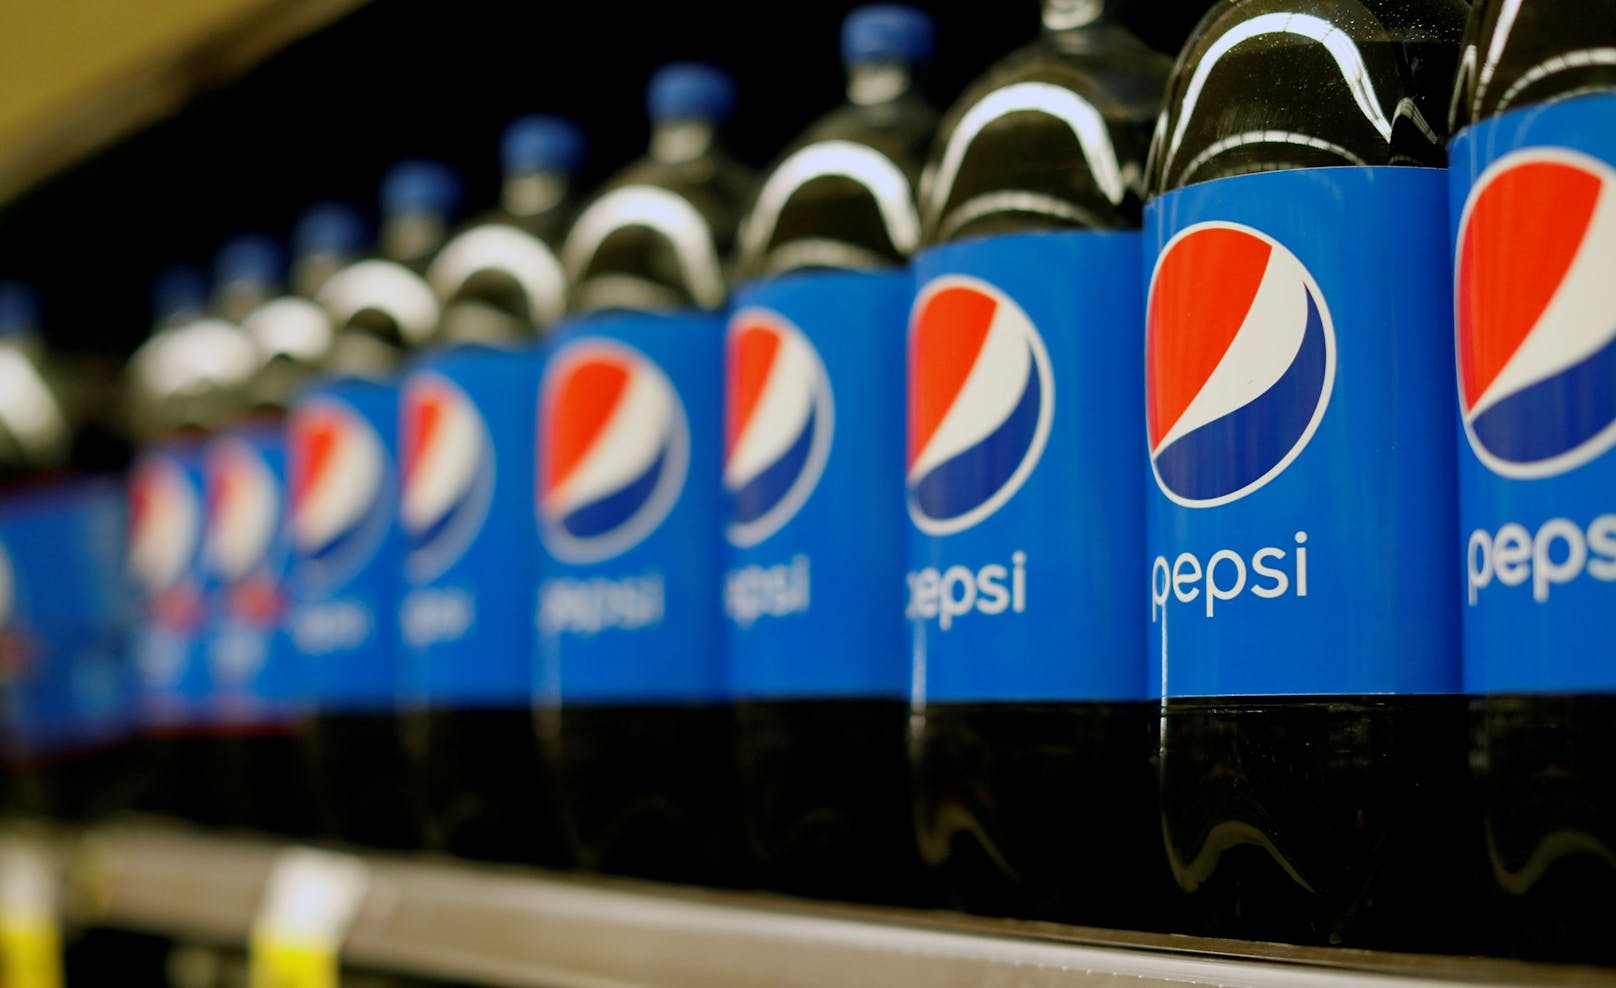 Pepsi ändert seine Cola-Rezeptur – das steckt dahinter